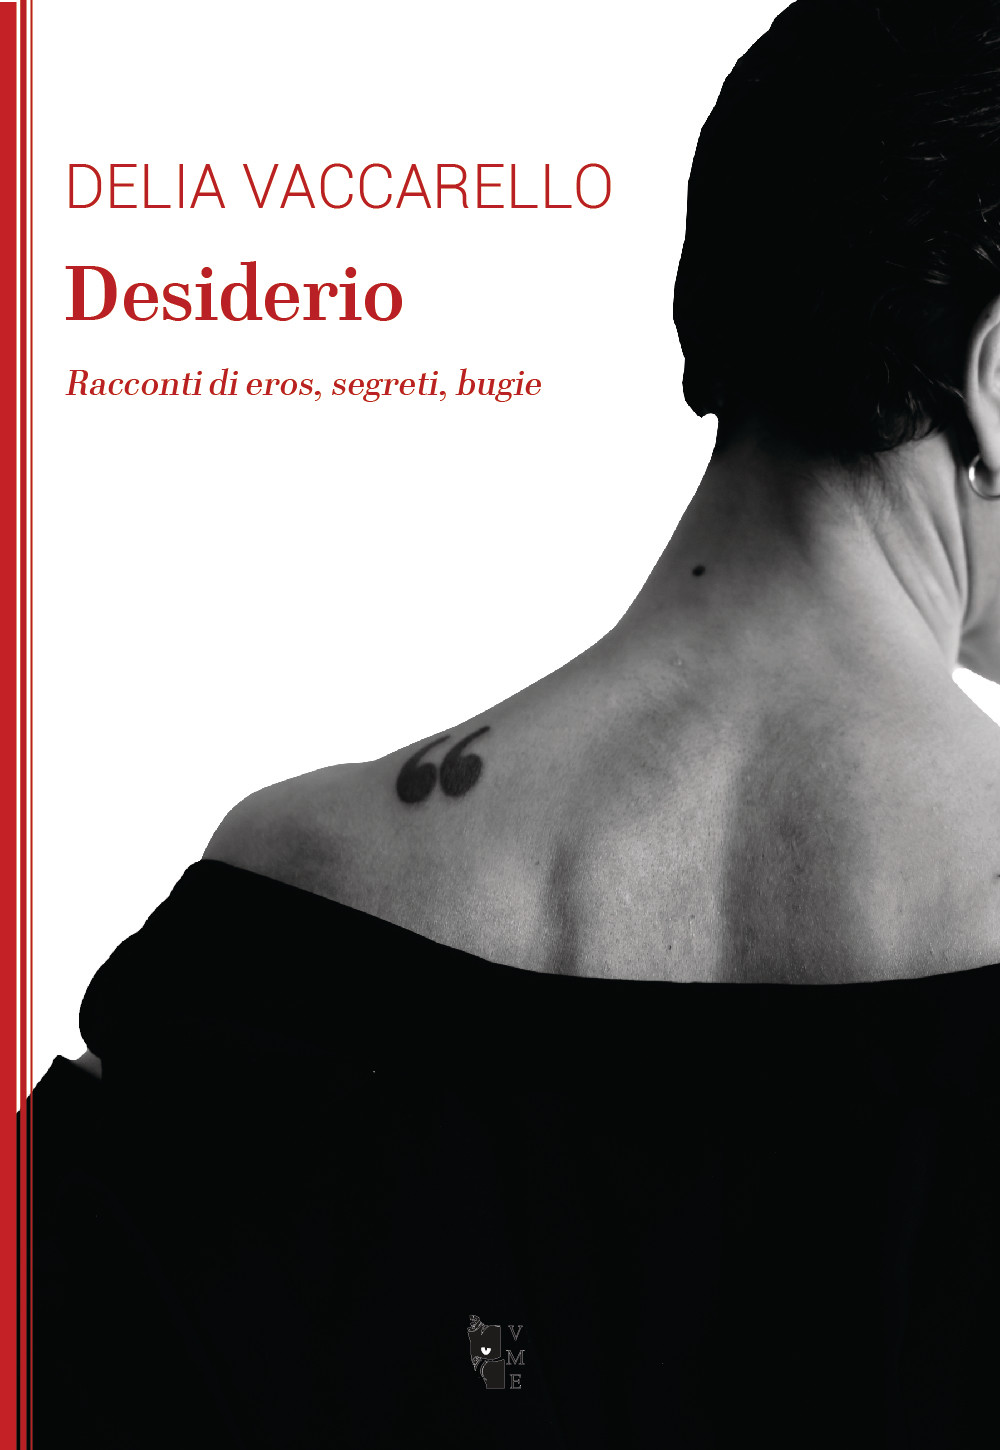 Delia Vaccarello - Desiderio